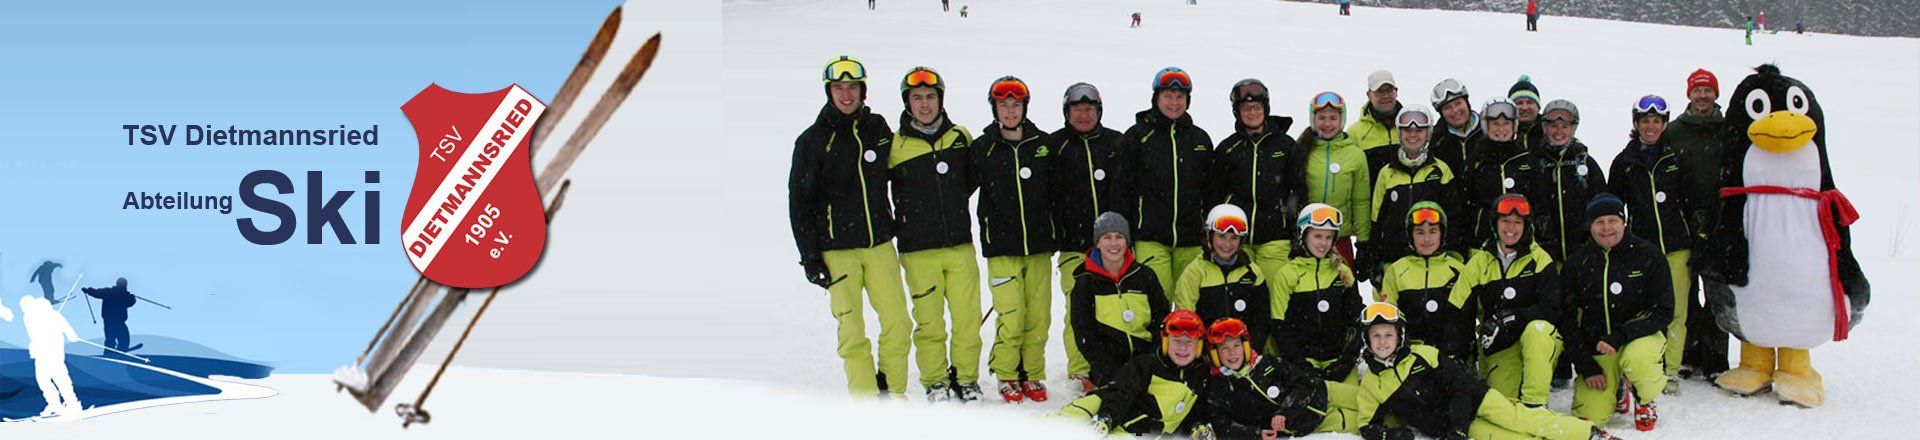 Ski ABteilung Dietmannsried: Skilehrer